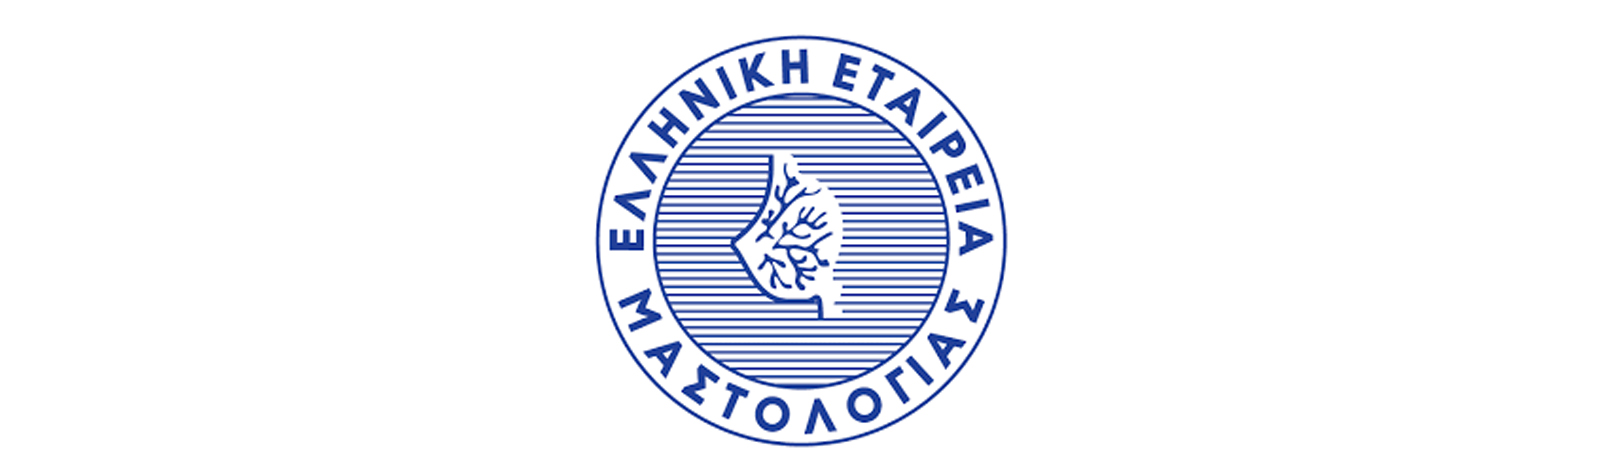 Εκπαιδευτικό Πρόγραμμα της Ελληνικής Εταιρείας Μαστολογίας